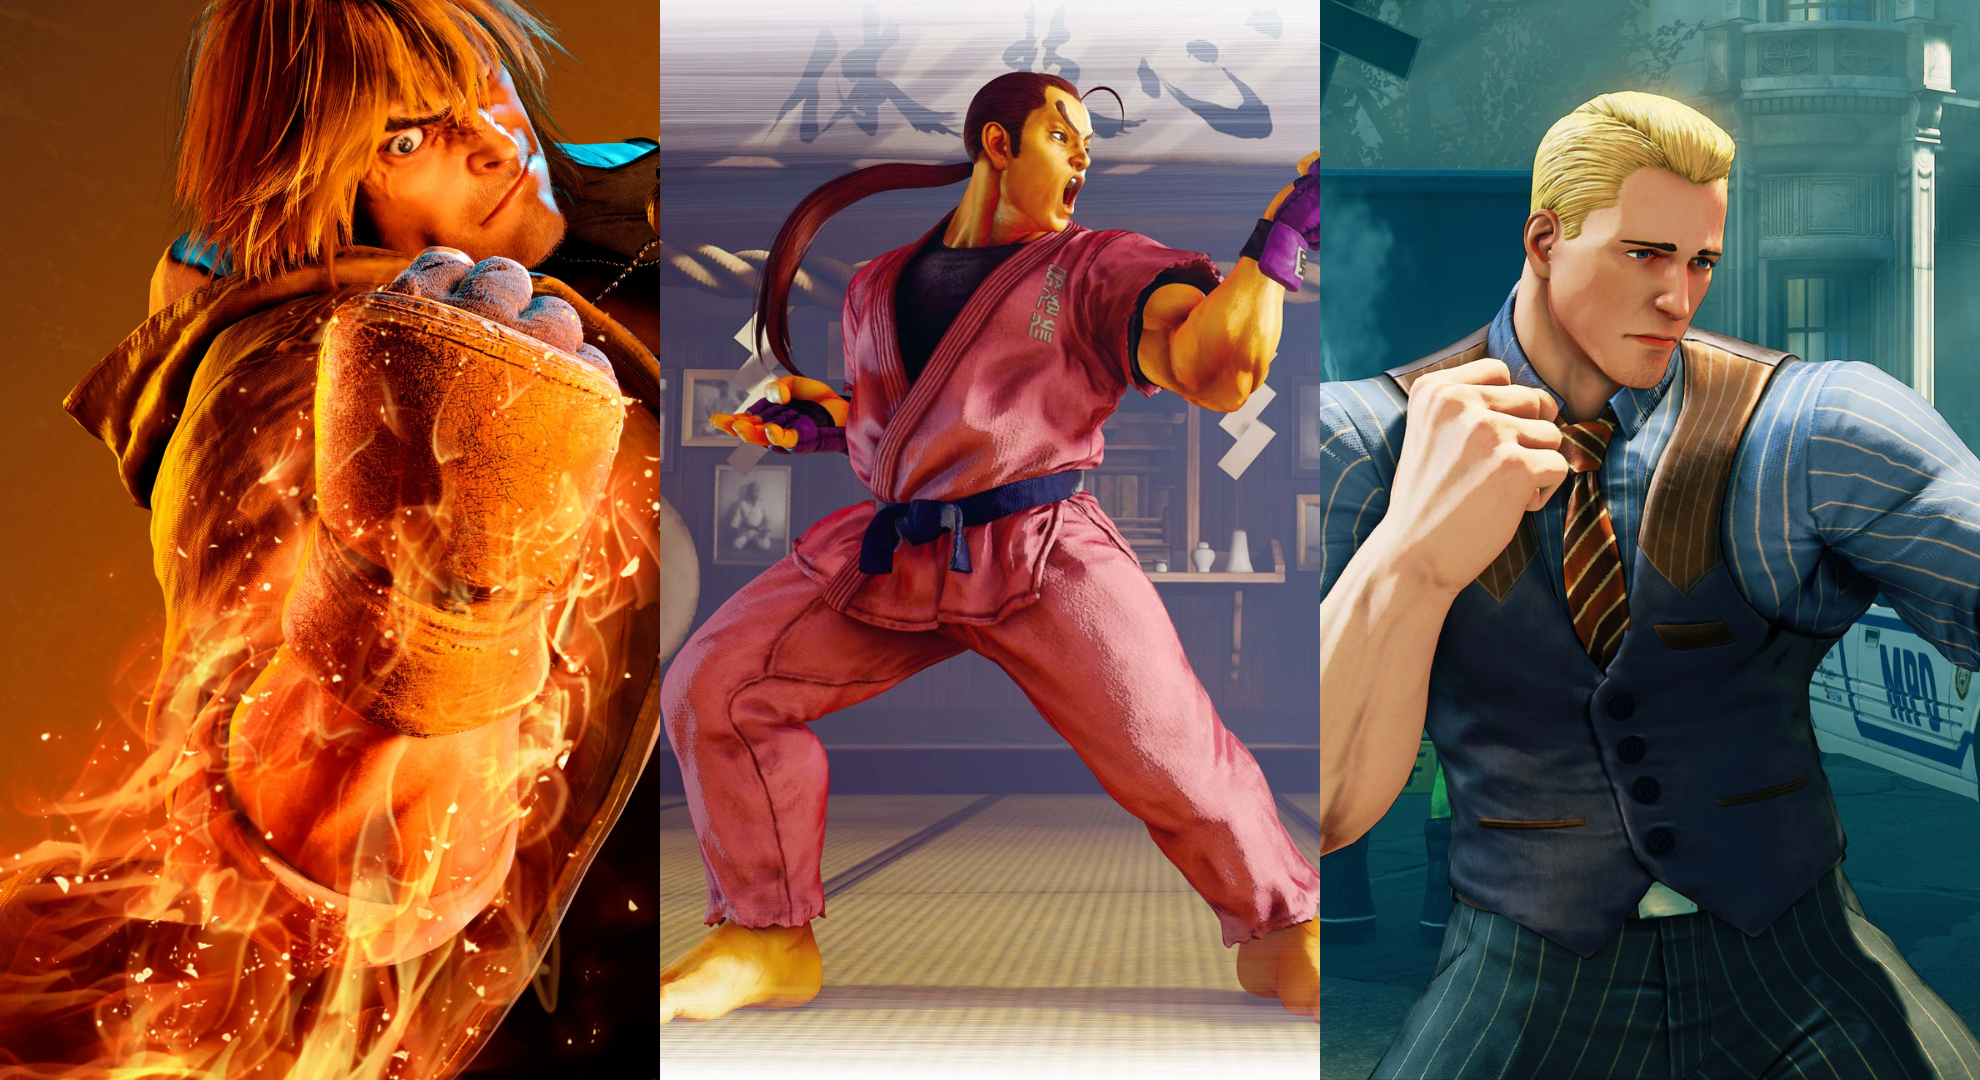 Tier List de Street Fighter: Duel com os melhores (e piores) personagens do  jogo